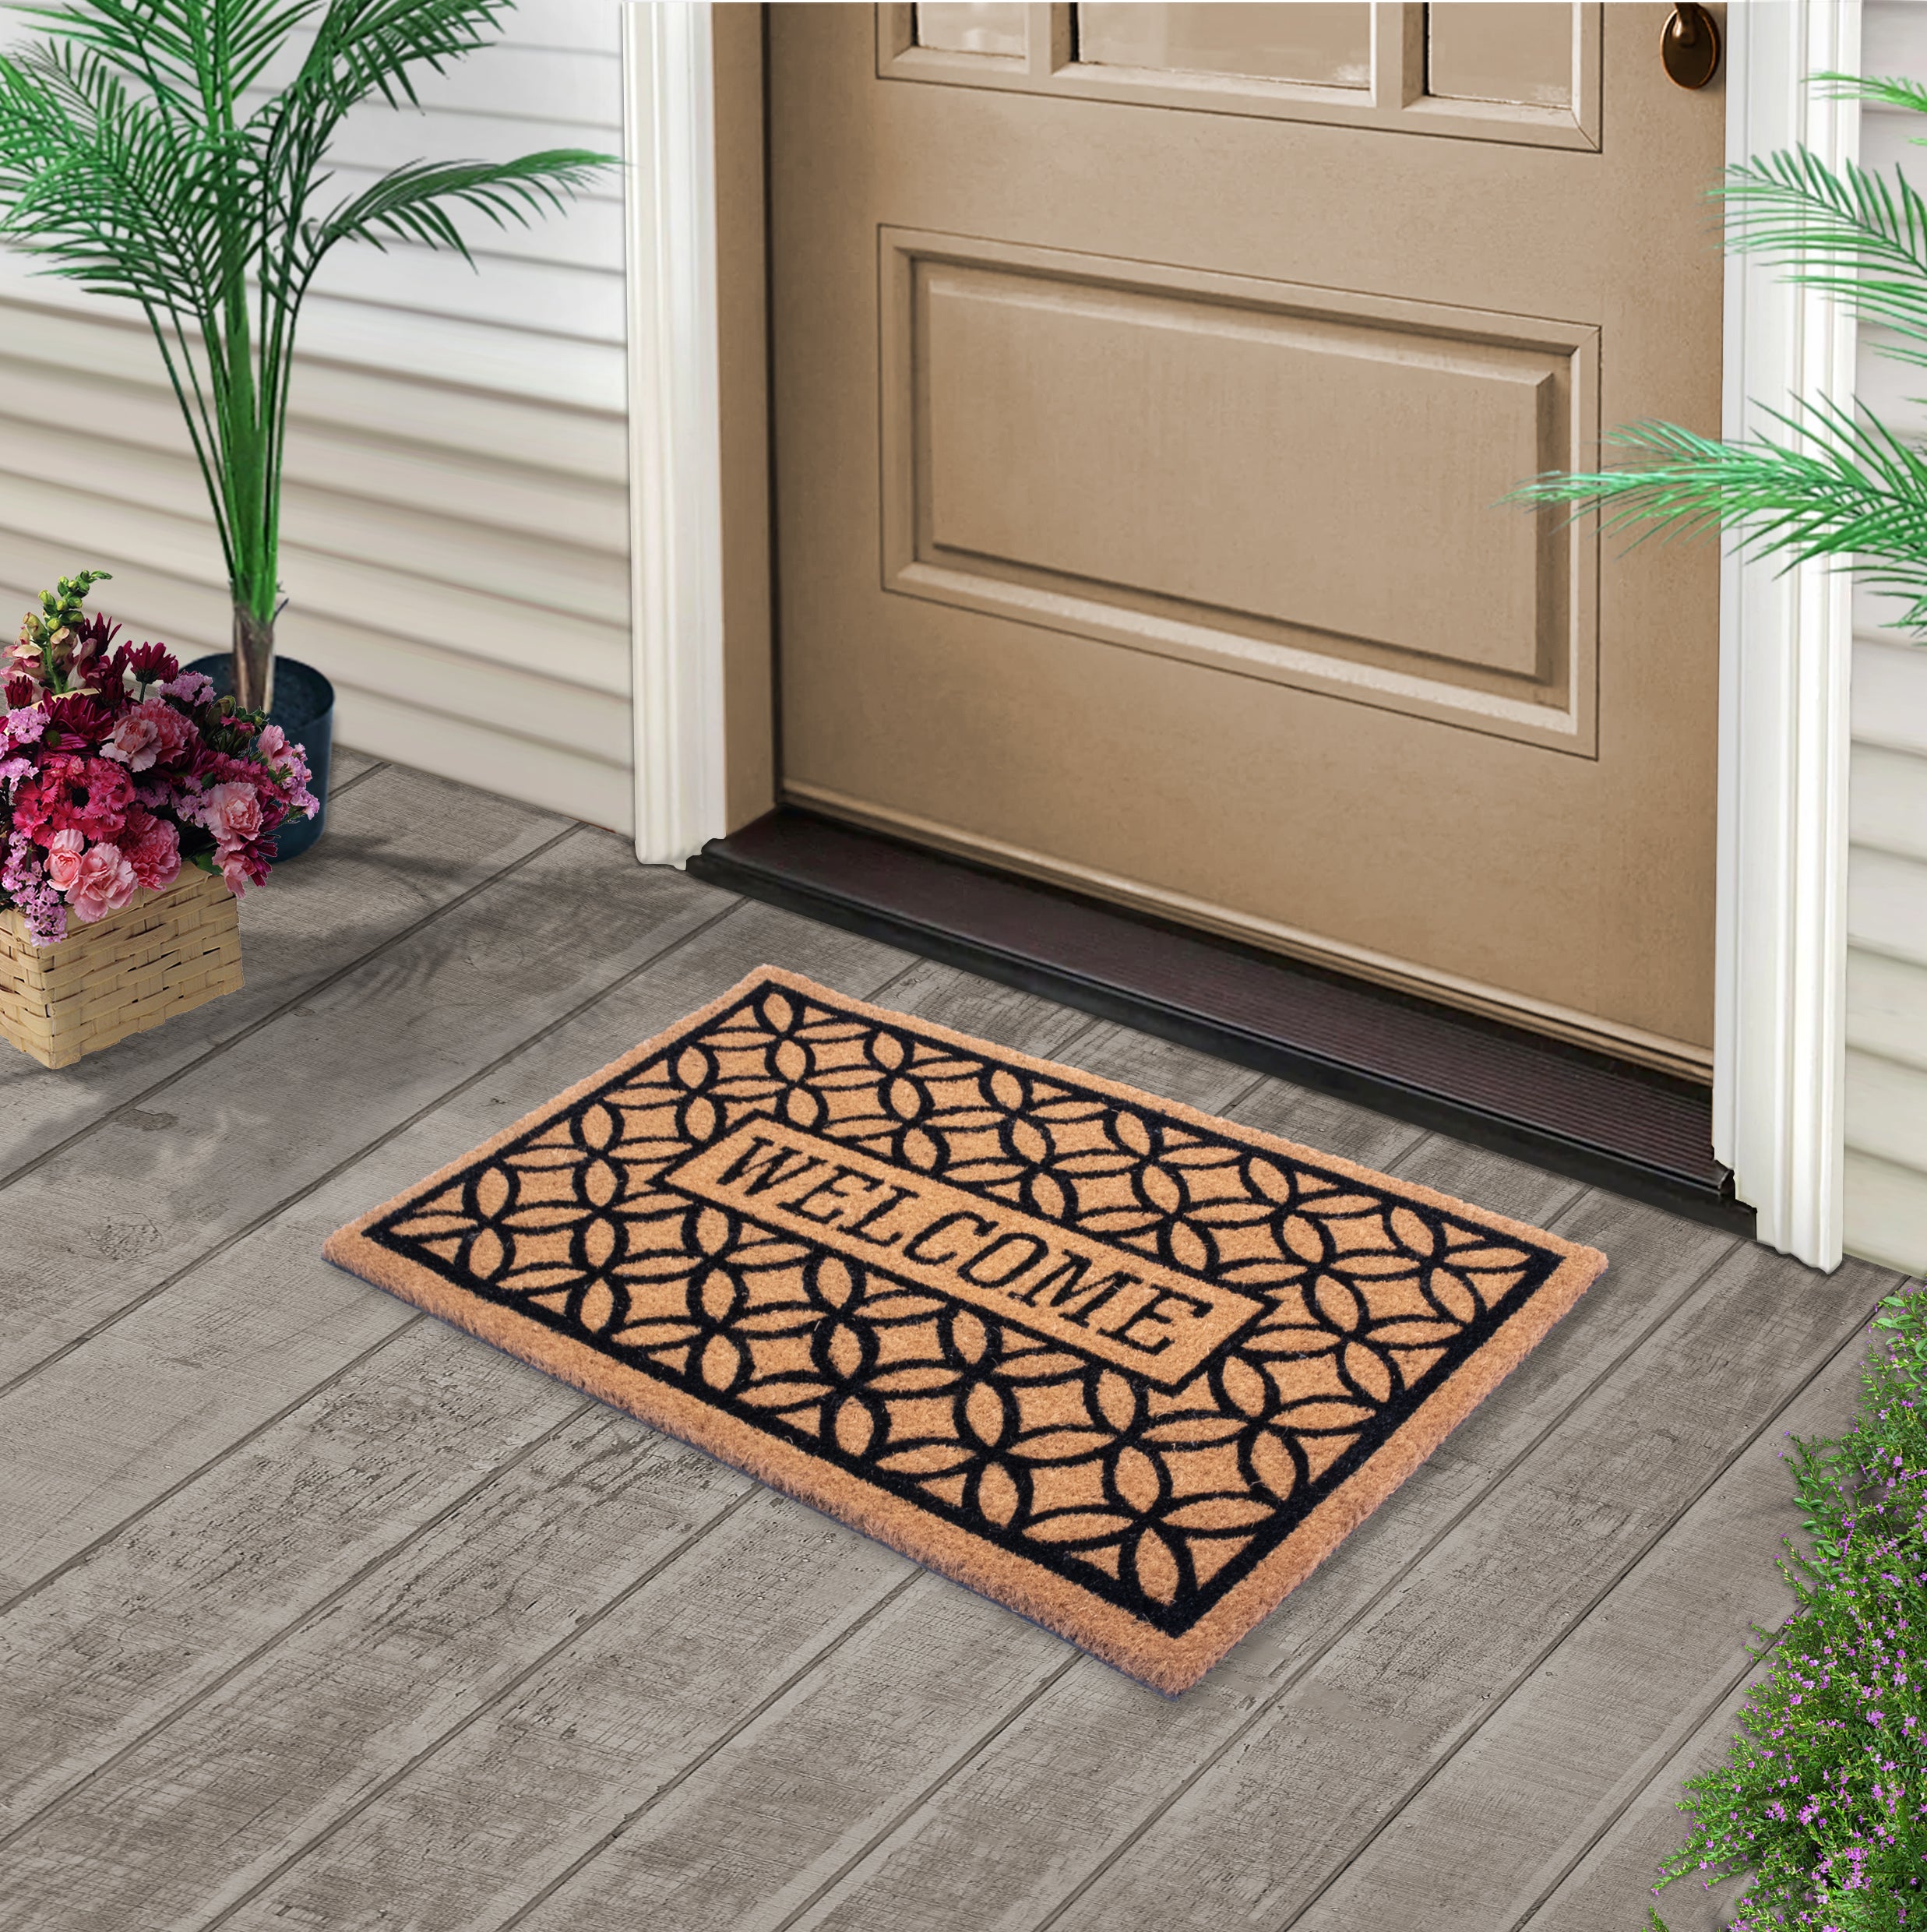 Mascot Hardware Welcome Letter Printed Non-Slip Doormats for Indoor Outdoor, 28 inchx18 inch, Size: Beige, Black